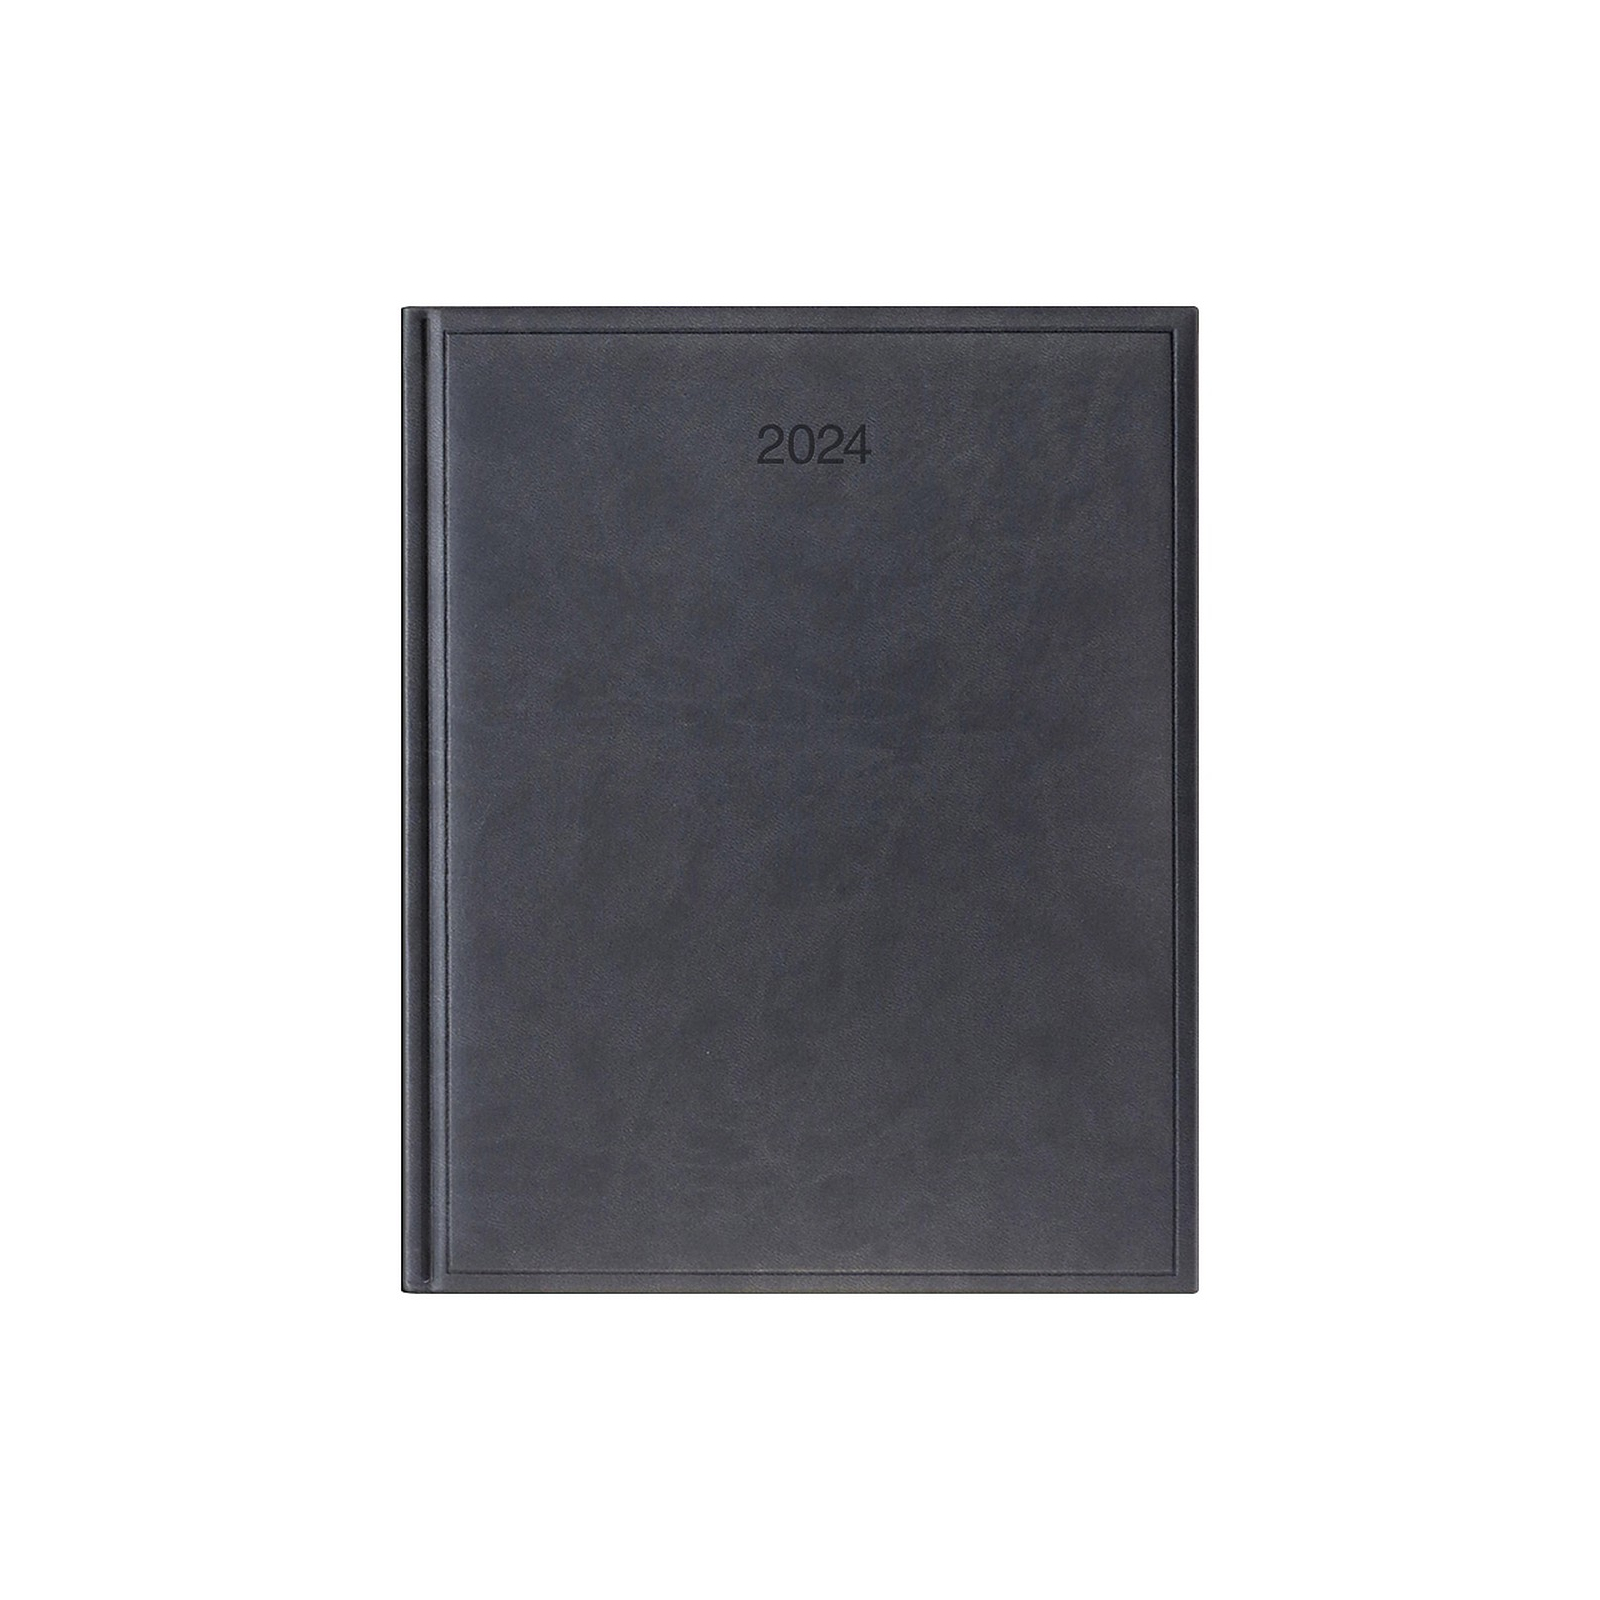 Еженедельник Brunnen датированный 2024 Torino Бюро A4 21x26 см 76 страниц Черный (73-761 38 904)